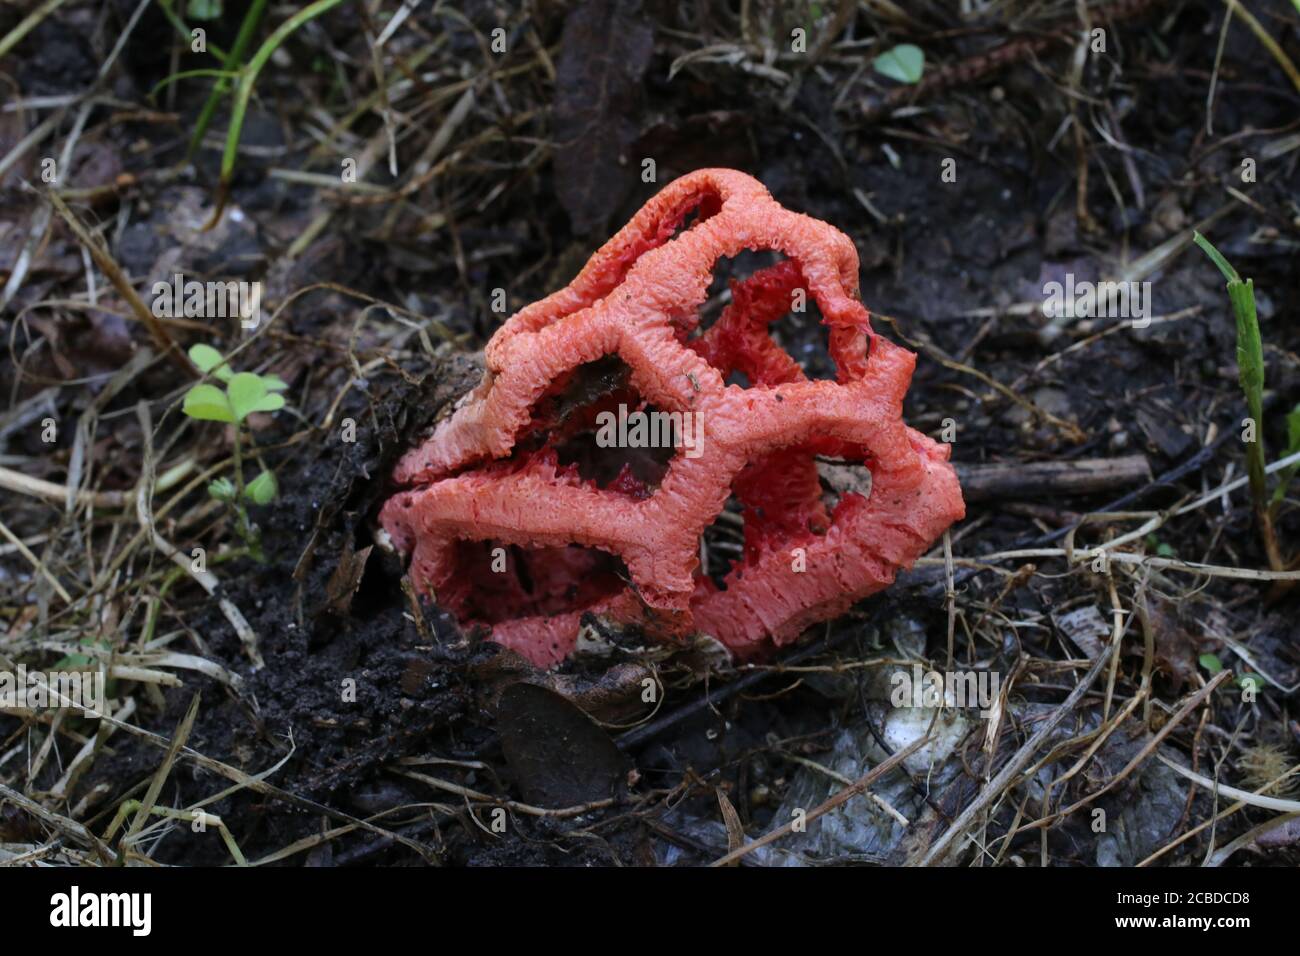 Clathrus ruber - Wild mushroom shot in the summer. Stock Photo